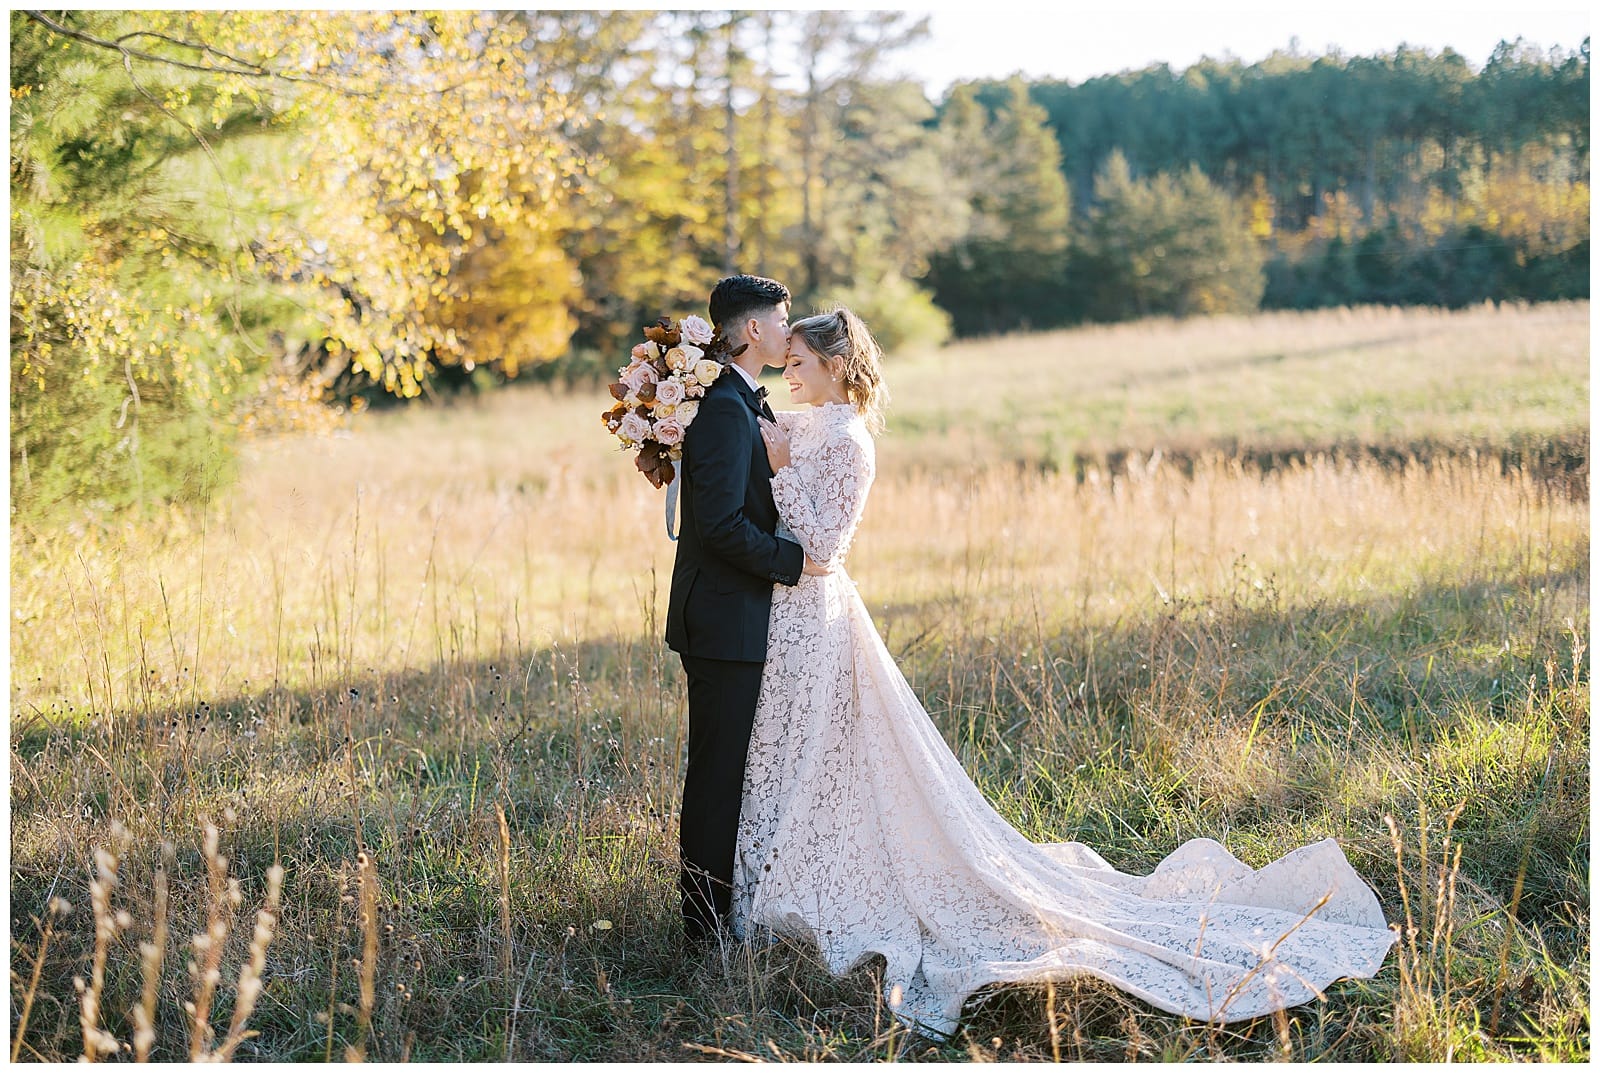 Danielle-Defayette-Photography-Bluebird-Meadows-Farm-Wedding_0013.jpg